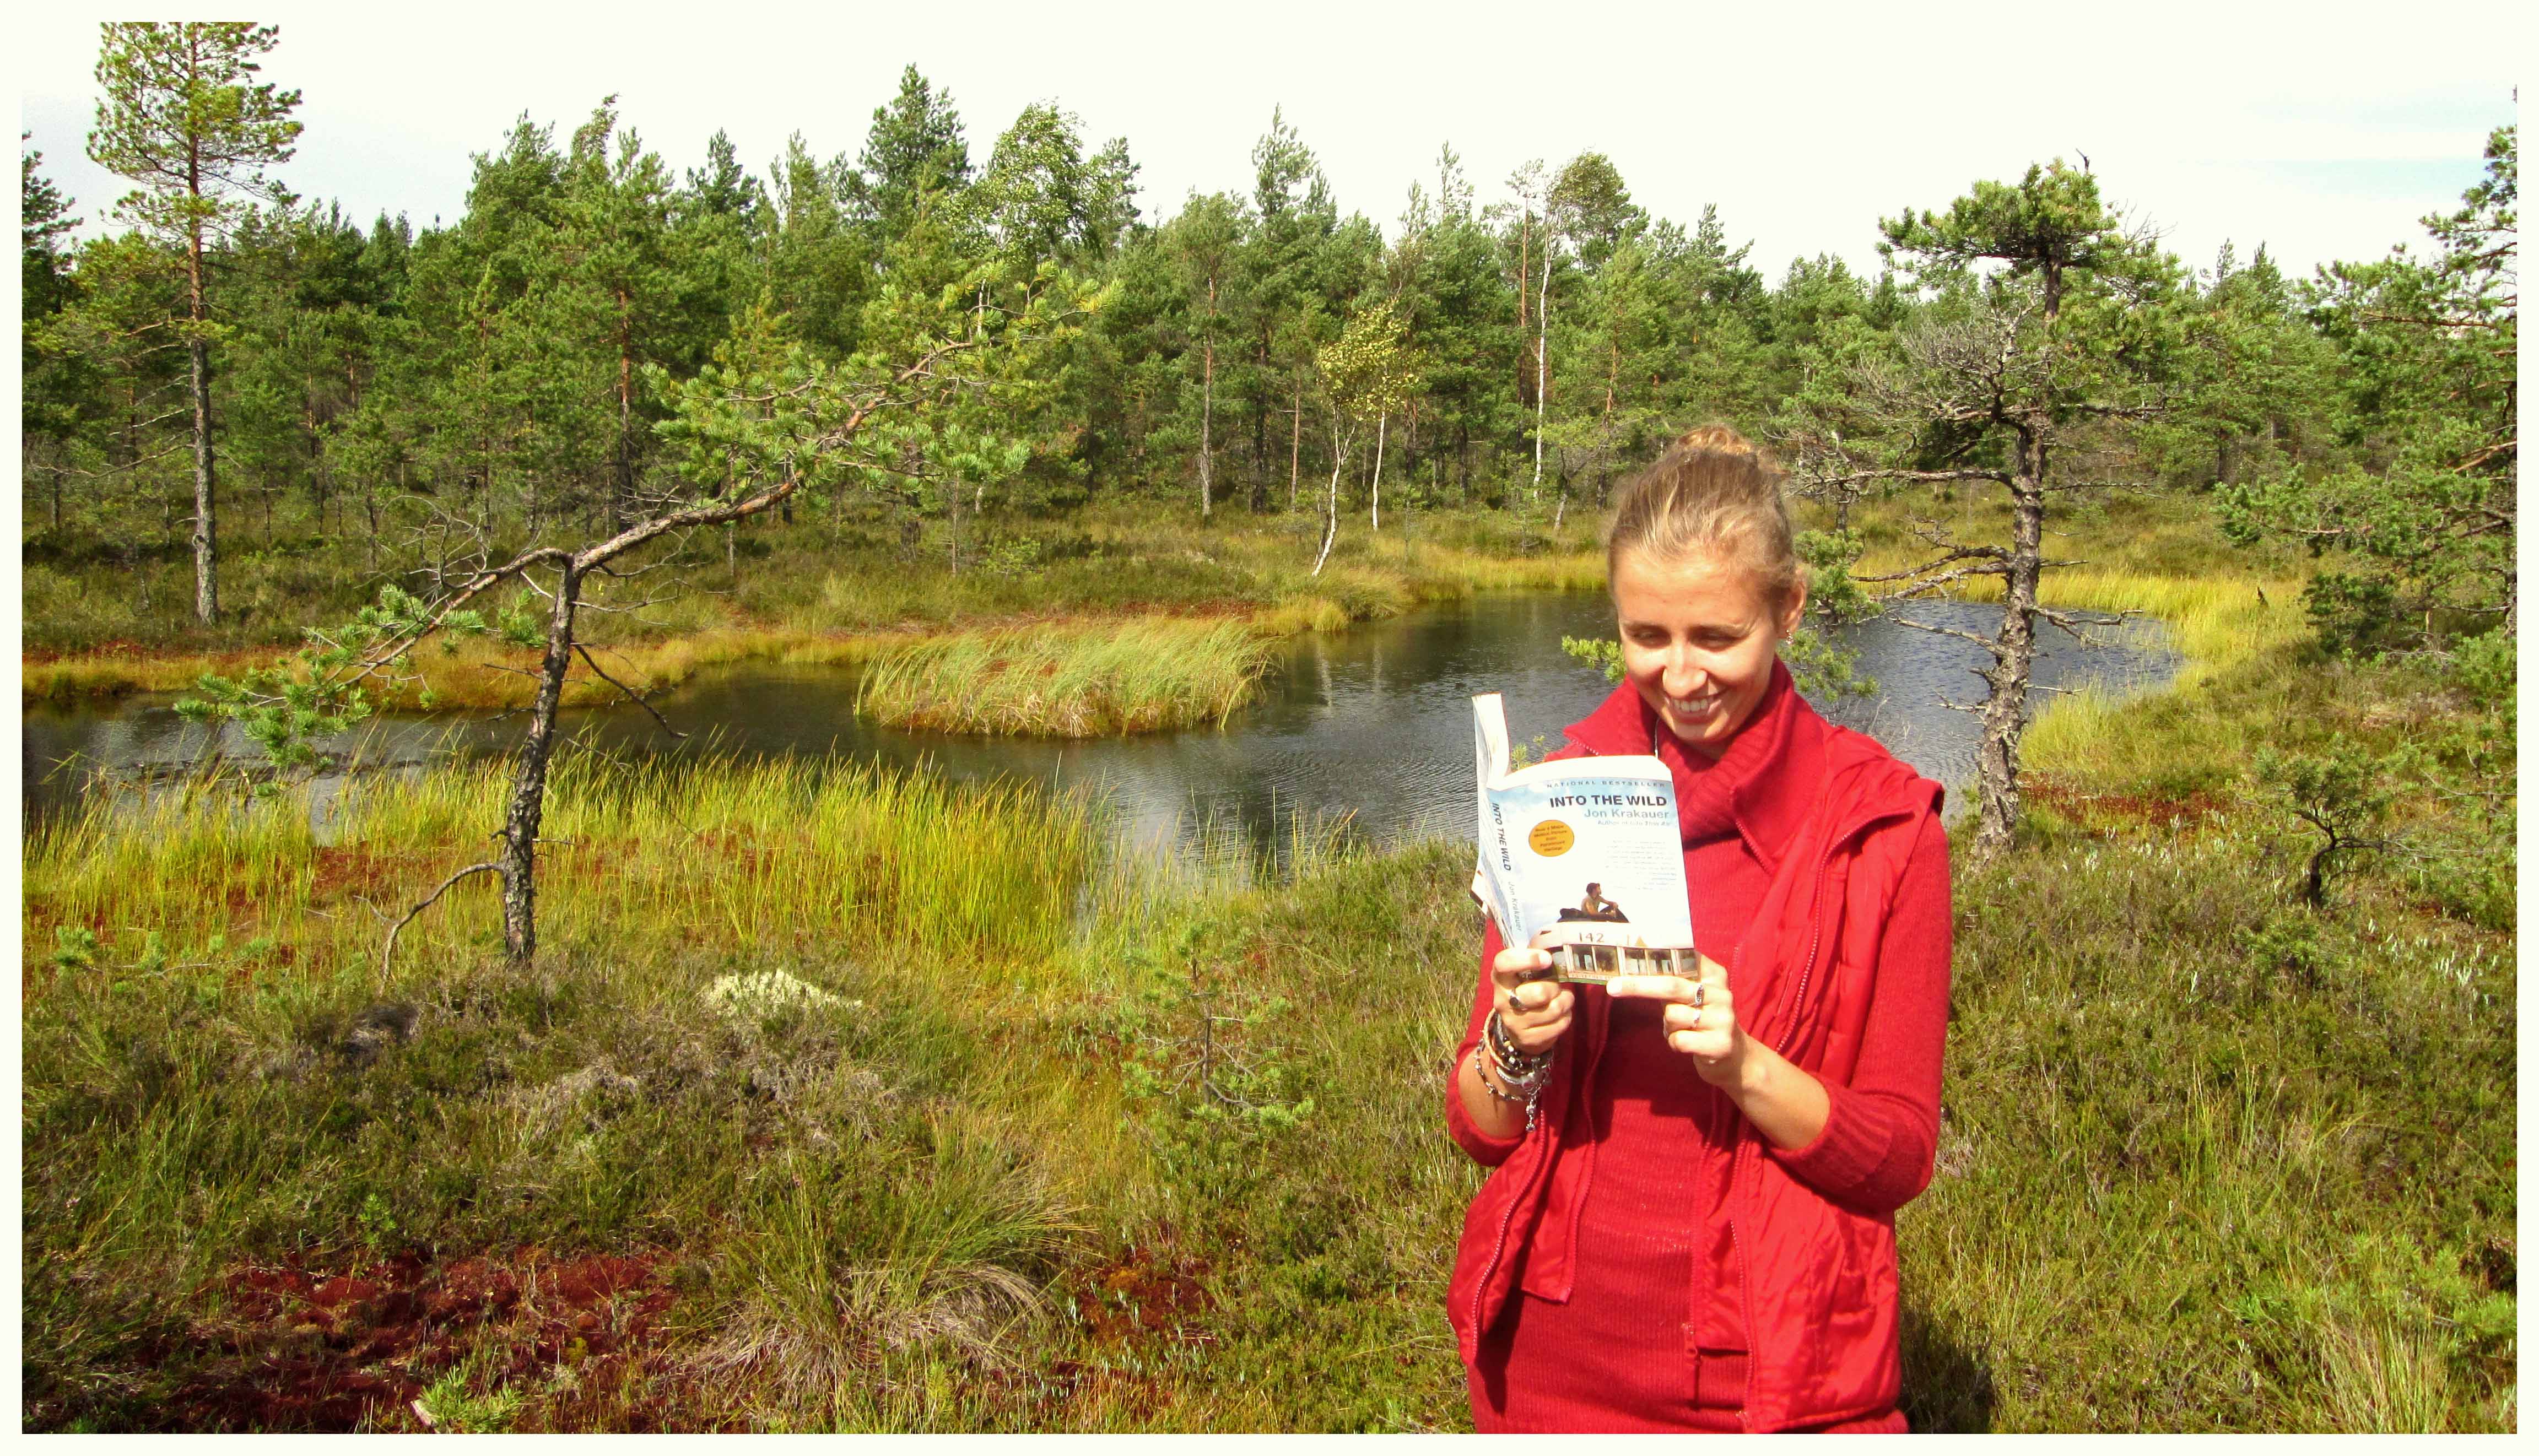 Rändajahingega juhatuse assistent Eeva, kes oma viimasel reisil loetud raamatust "Into the Wild" teile täna kirjutab. Foto autor: ....